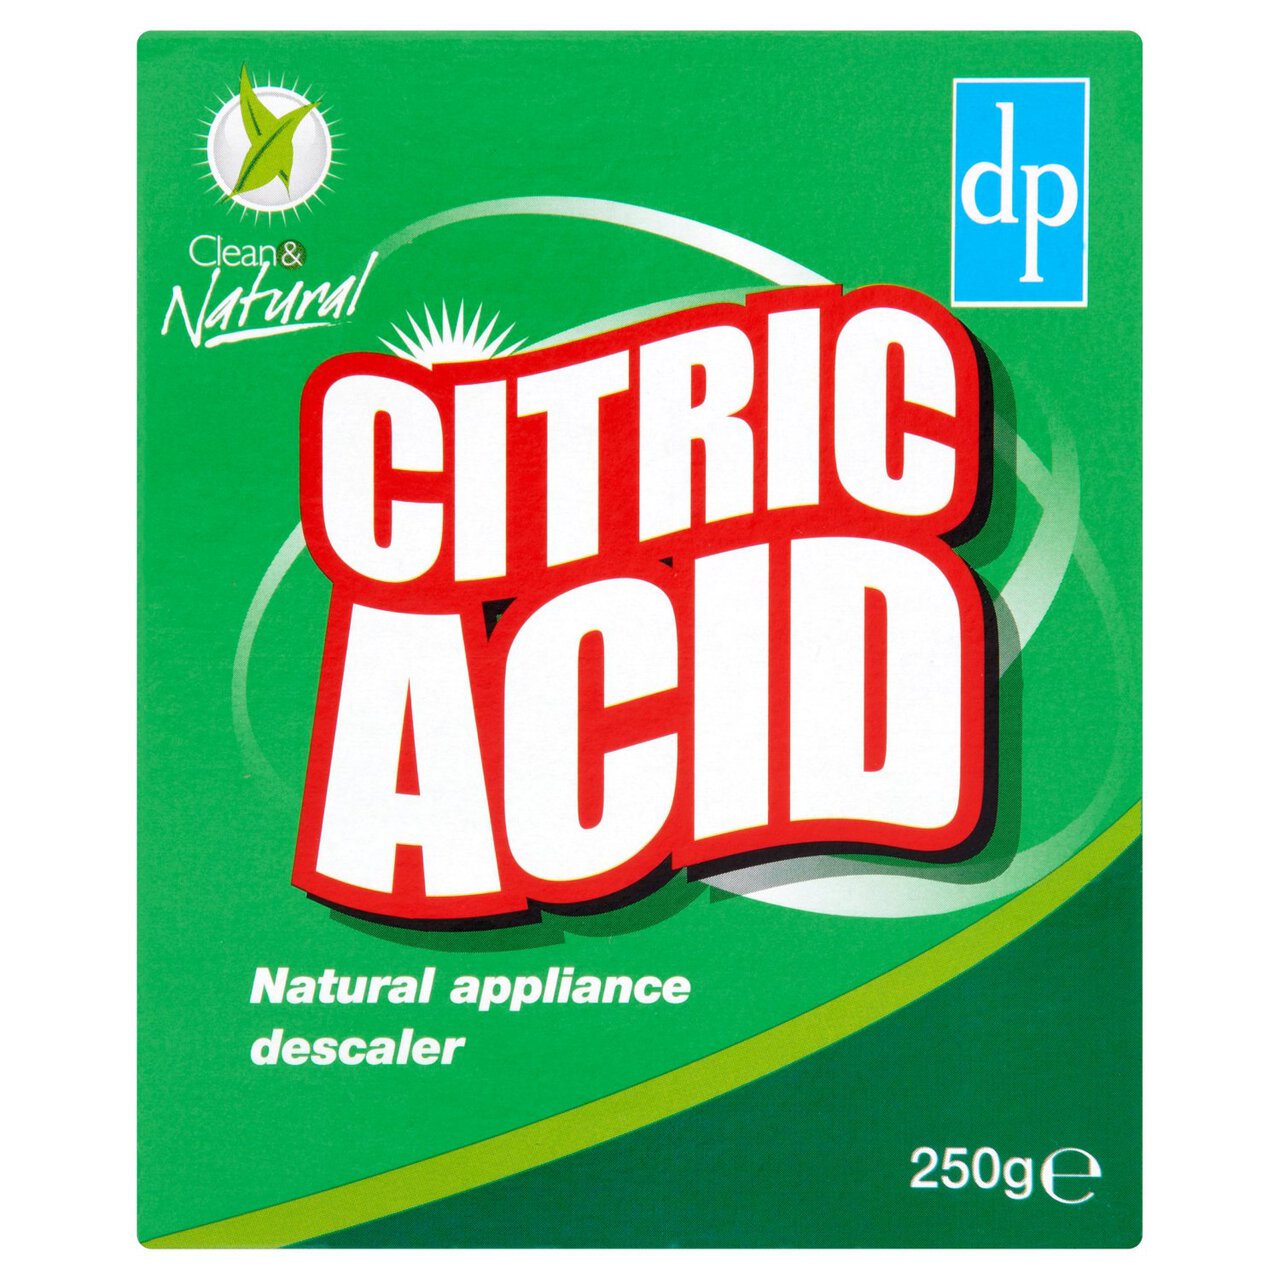 Dri-Pak Citric Acid 250g